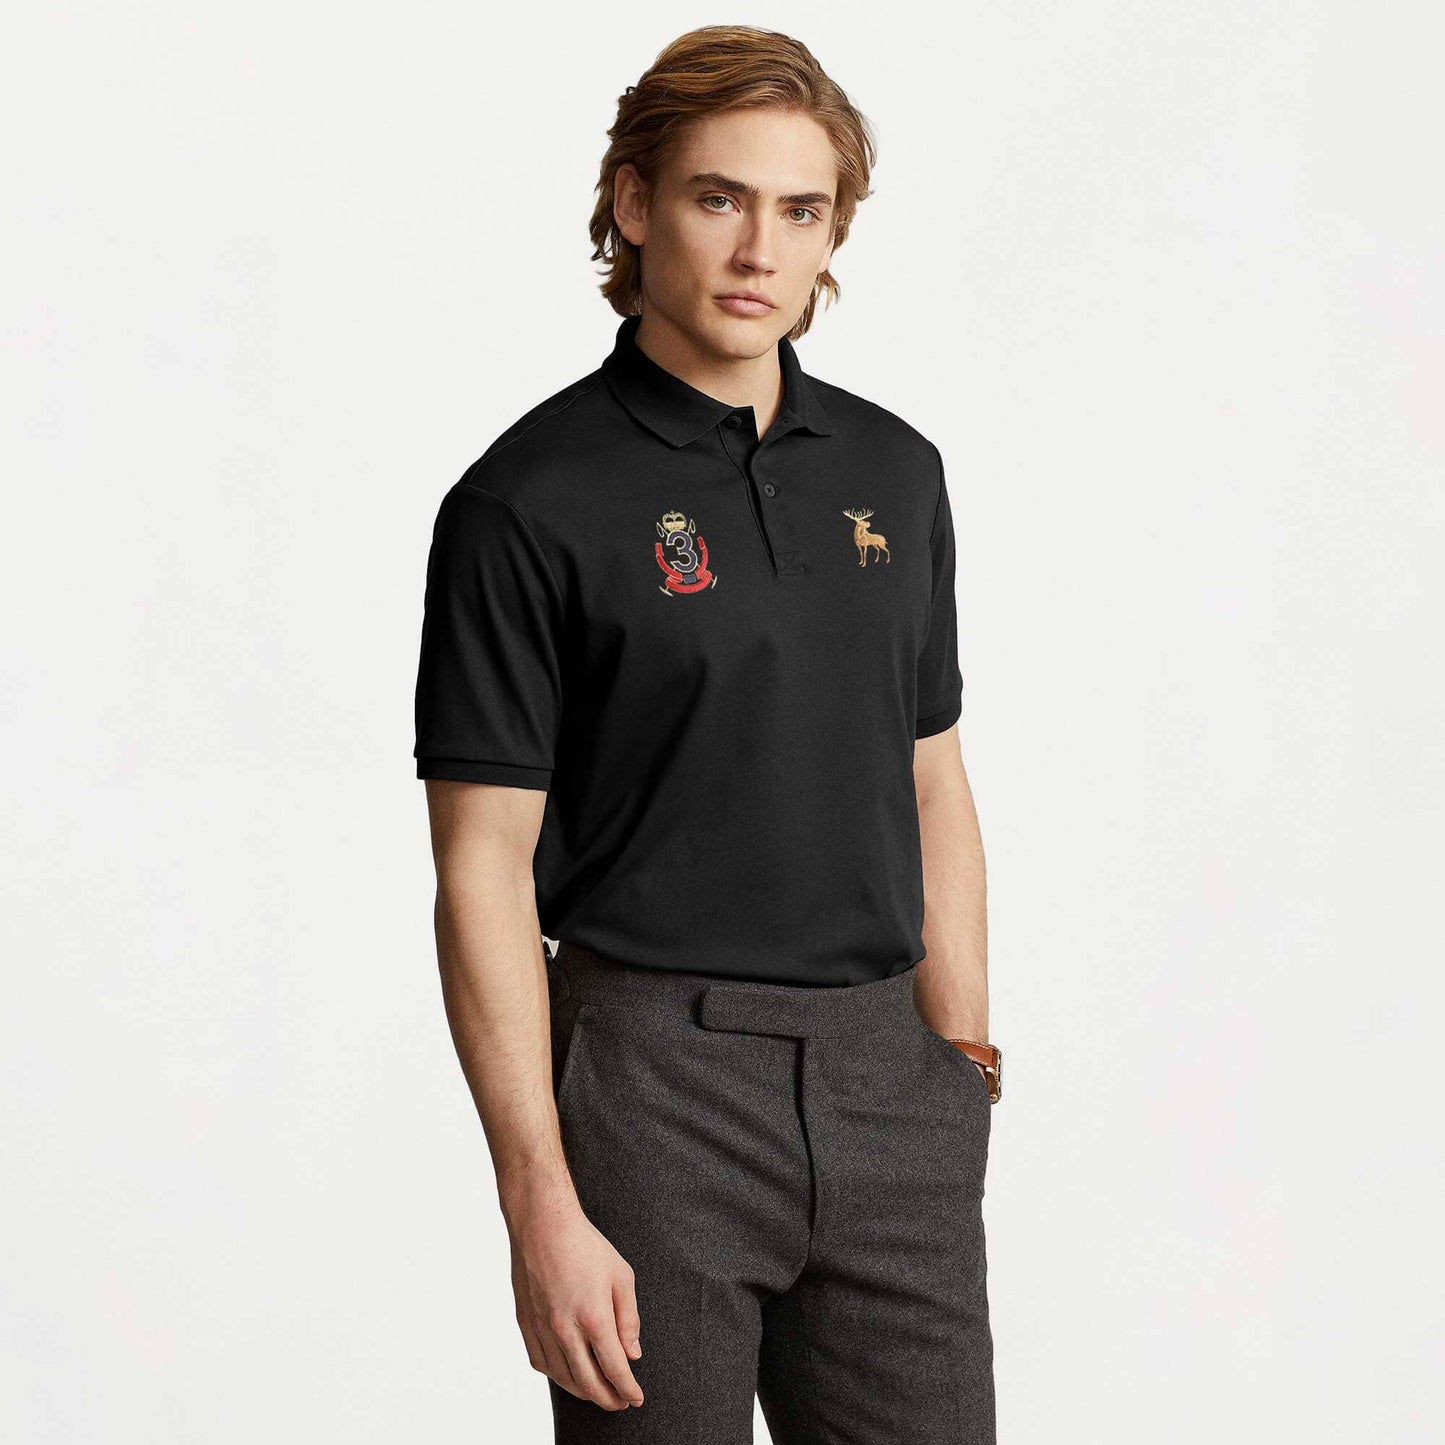 Polo Republica Men's Moose & Crest 3 Embroidered Short Sleeve Polo Shirt Men's Polo Shirt Polo Republica Black S 